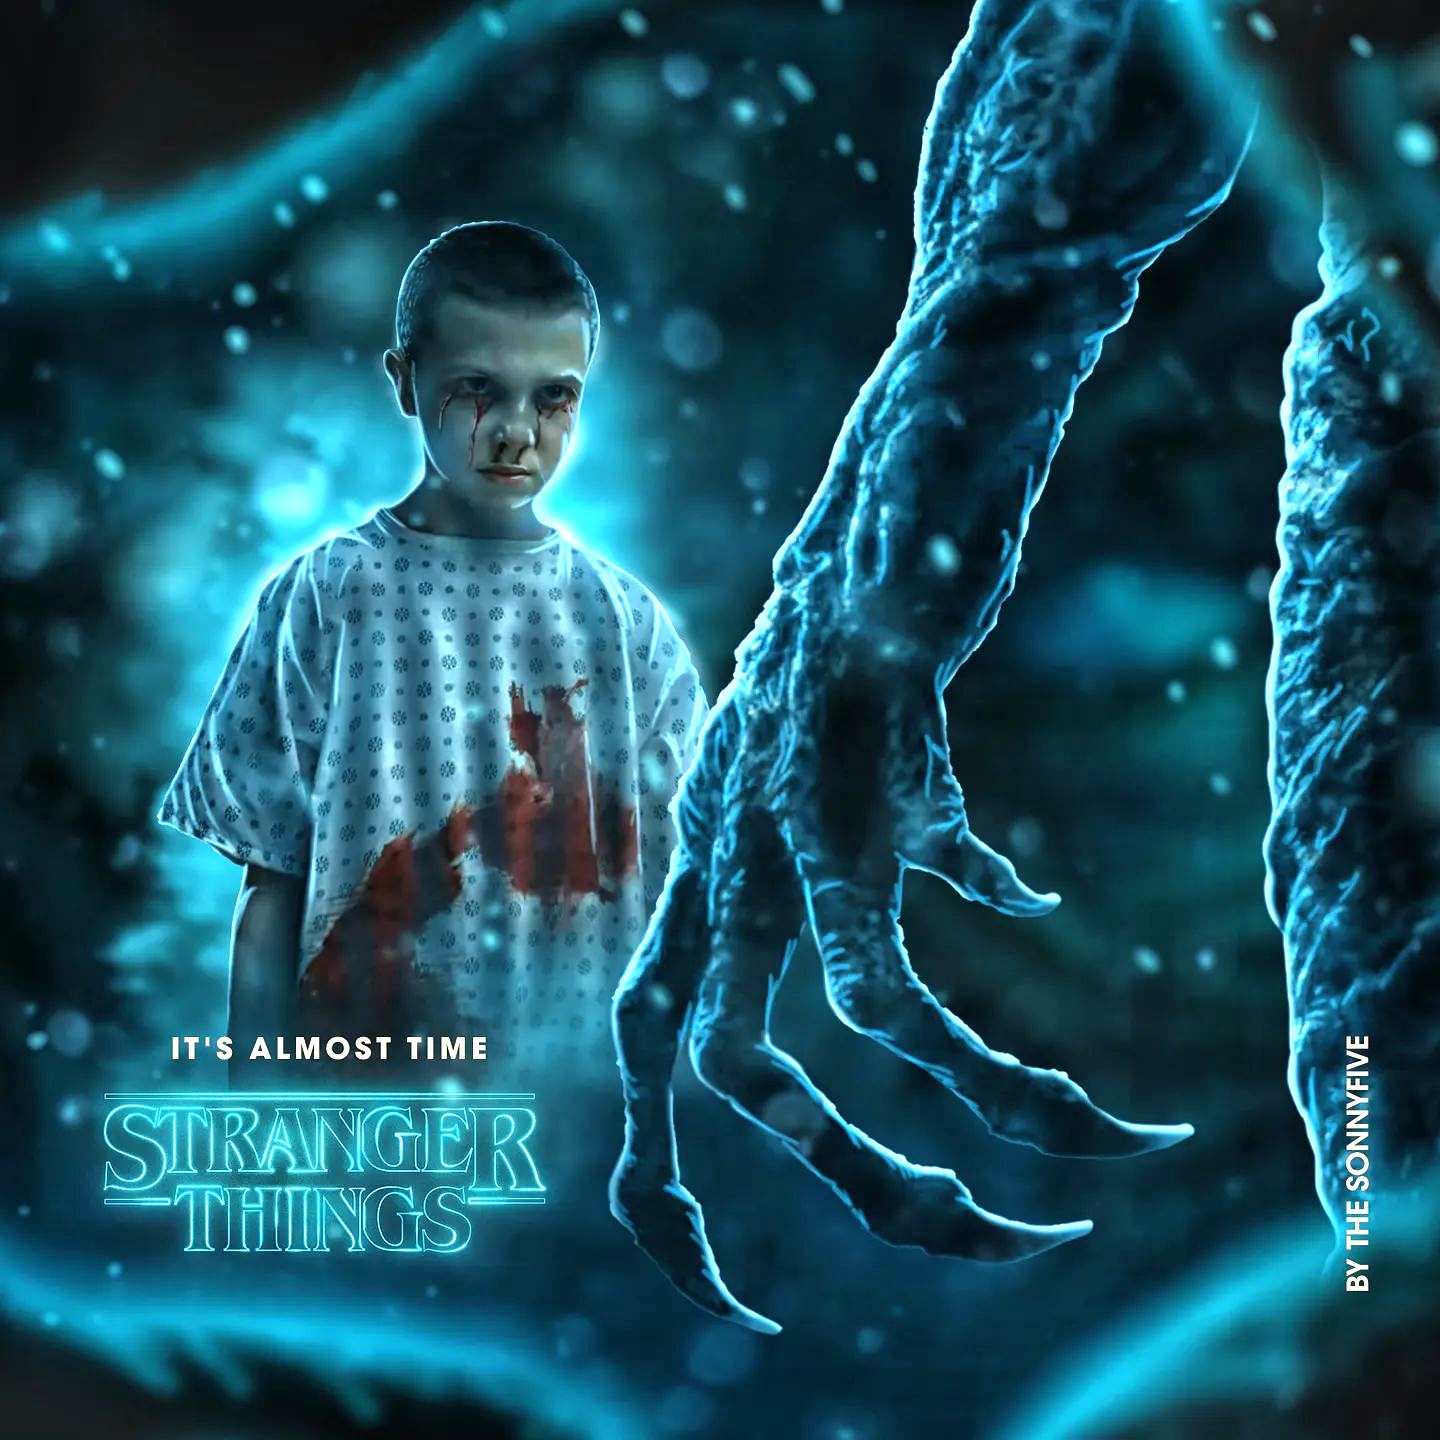 Stranger News on X: Stranger Things 4 Vol 1 will be released in